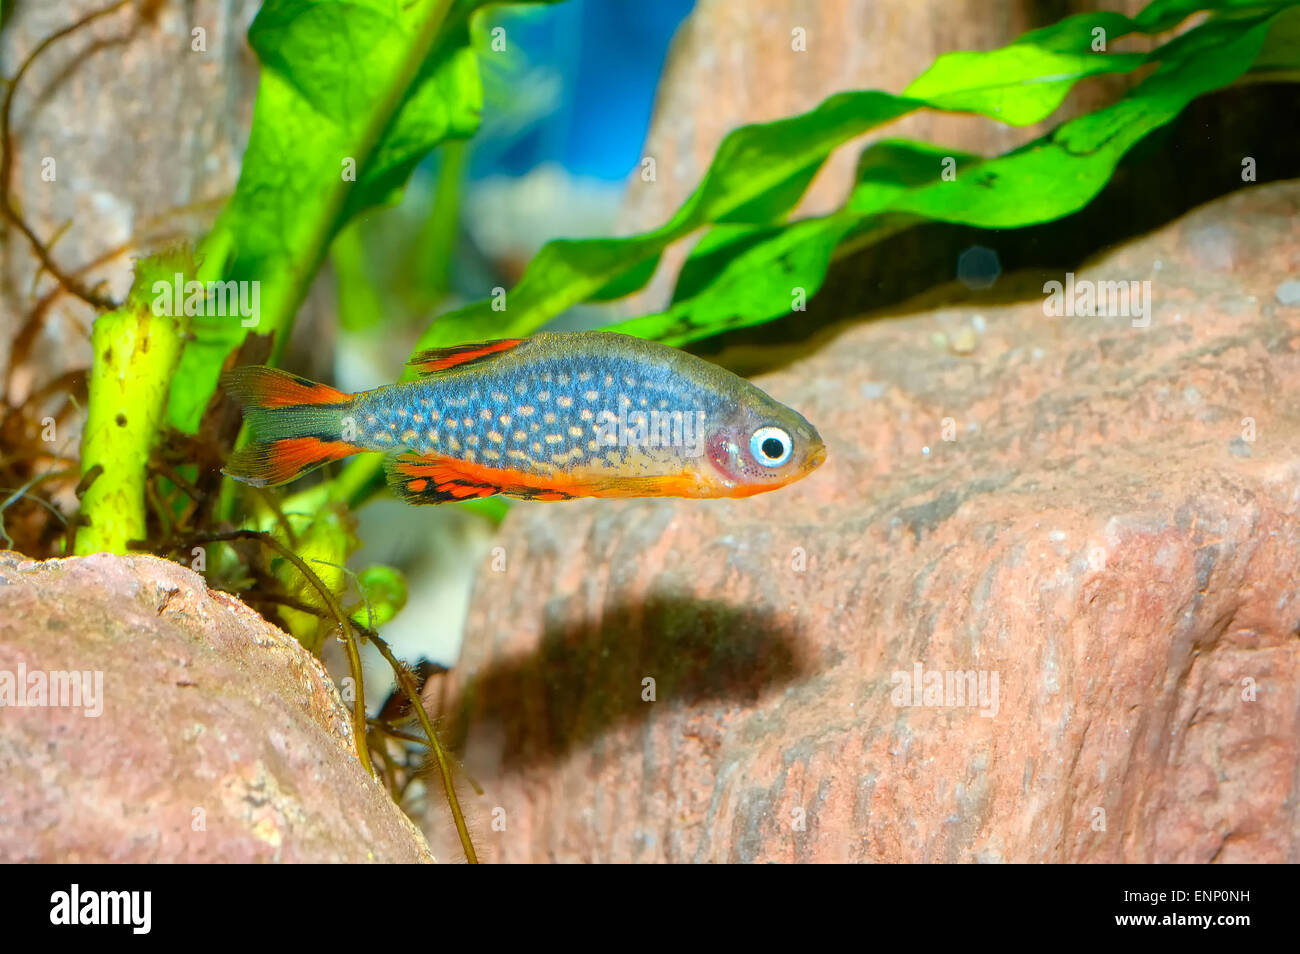 Nice aquarium fish from genus Celestichthys. Stock Photo